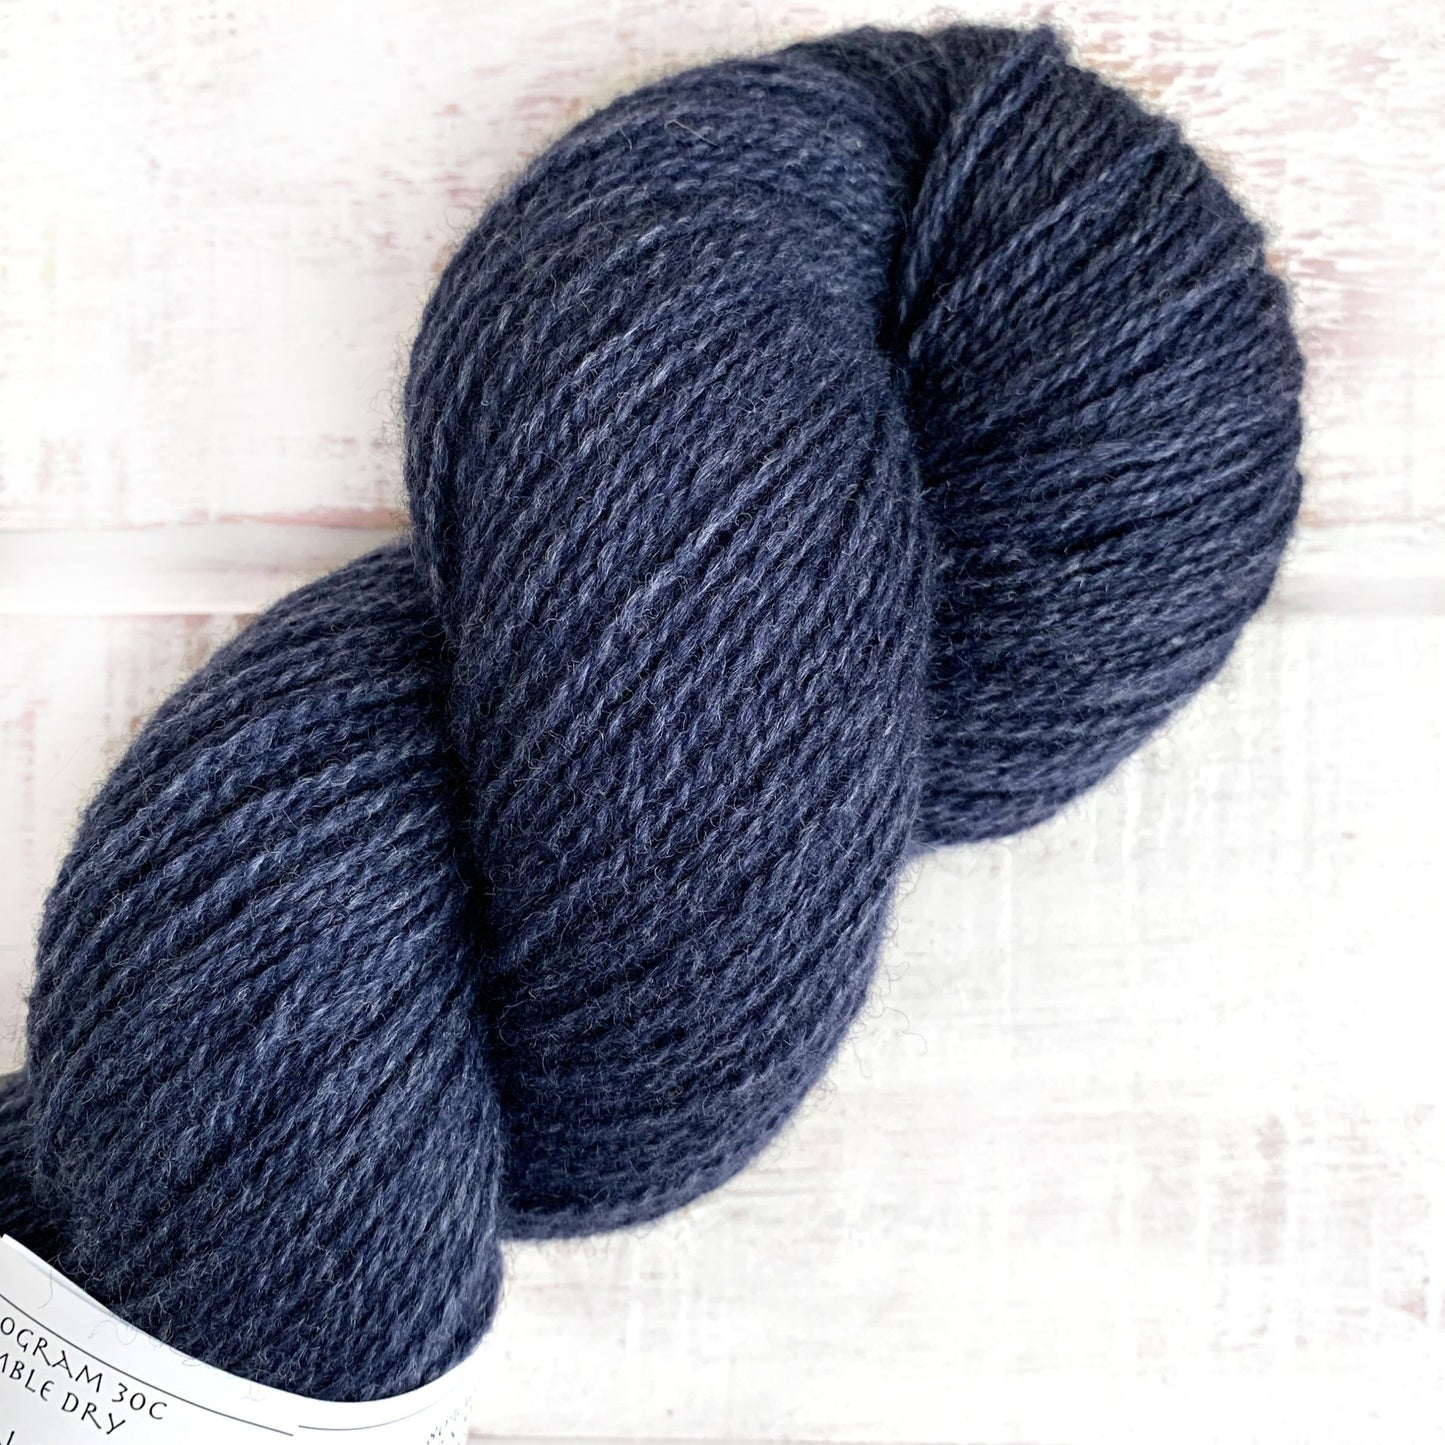 Mariana - Trollfjord sock - Hand Dyed Yarn - Tonal Yarn